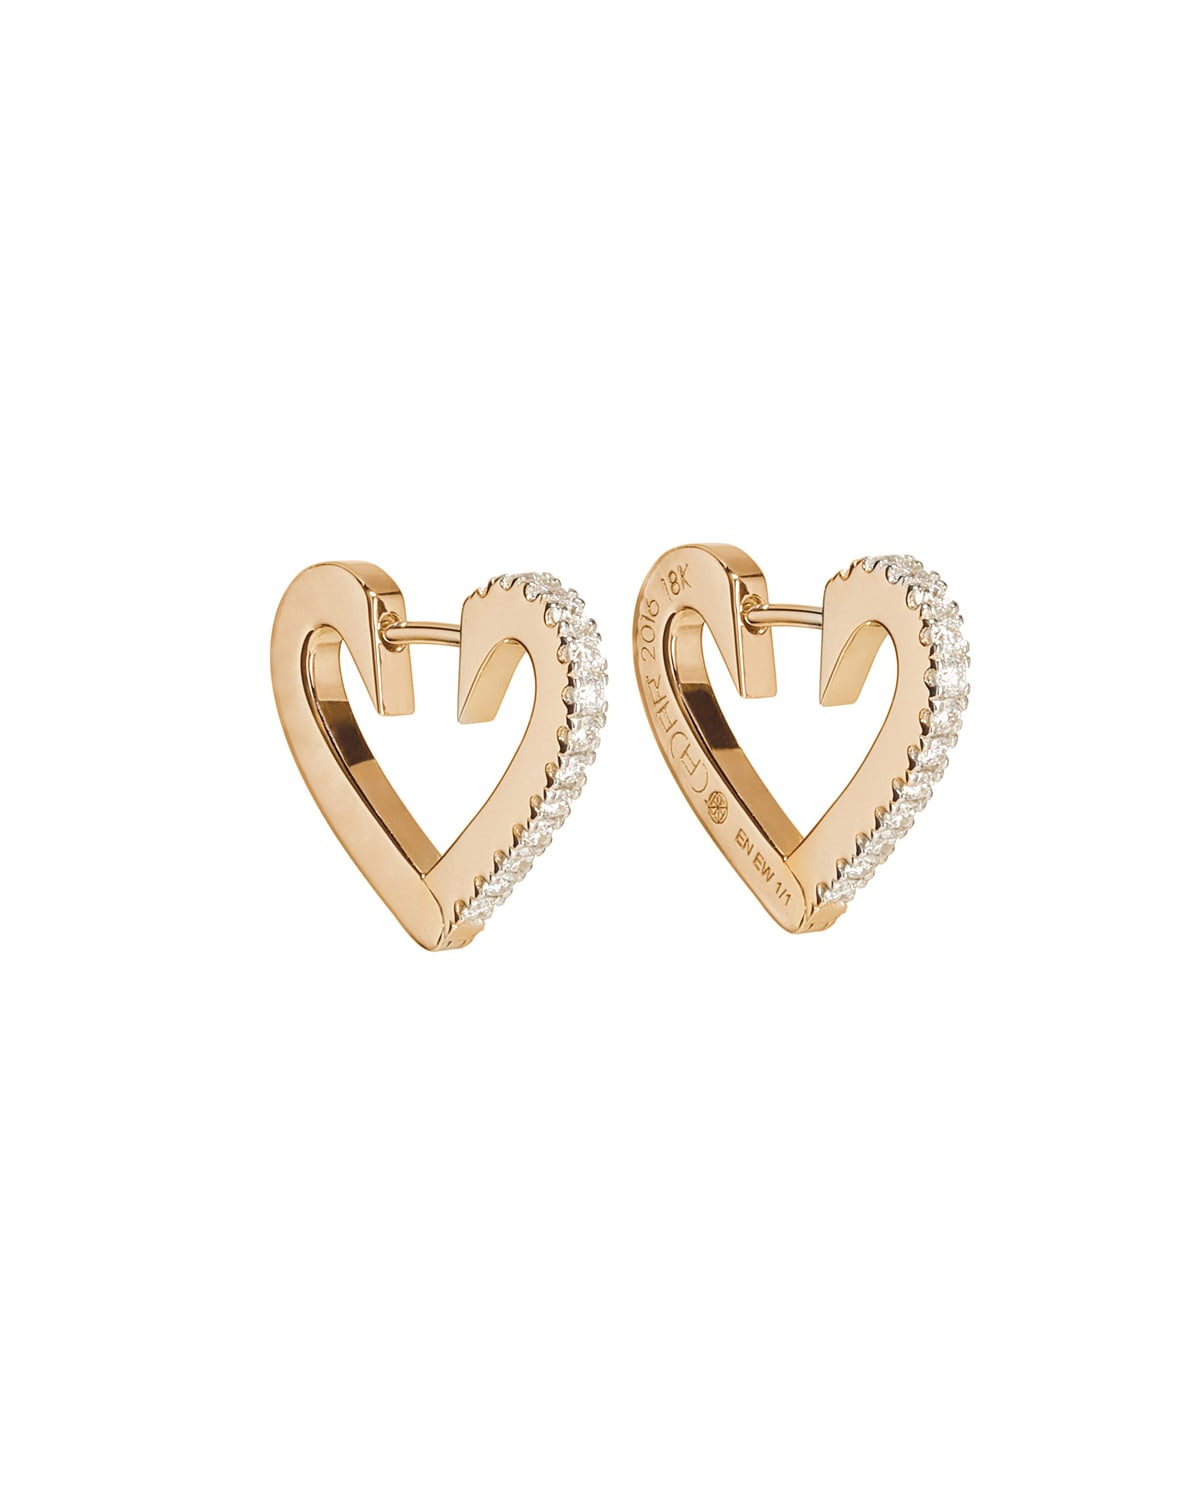 18k Rose Gold Diamond Heart Ring, Size 7